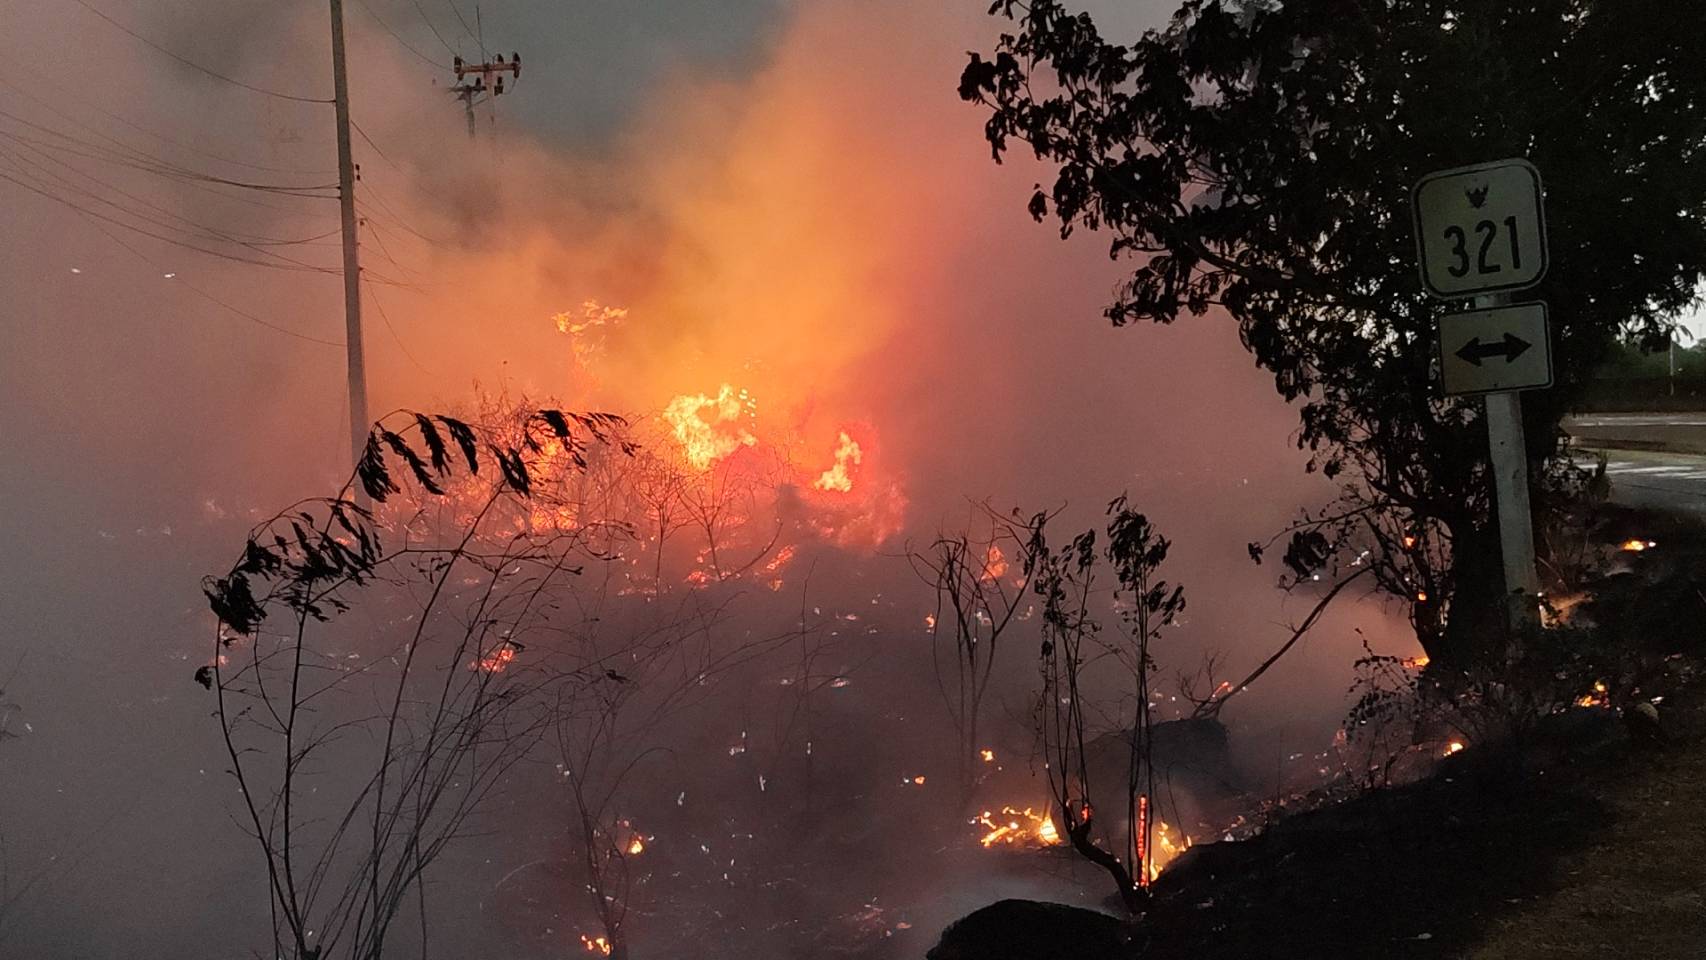 สุพรรณบุรี-ไฟไหม้หญ้าแห้งริมทางหวิดลุกลามเข้าอู่ซ่อมรถโชคดีฝนตกช่วยดับไฟ